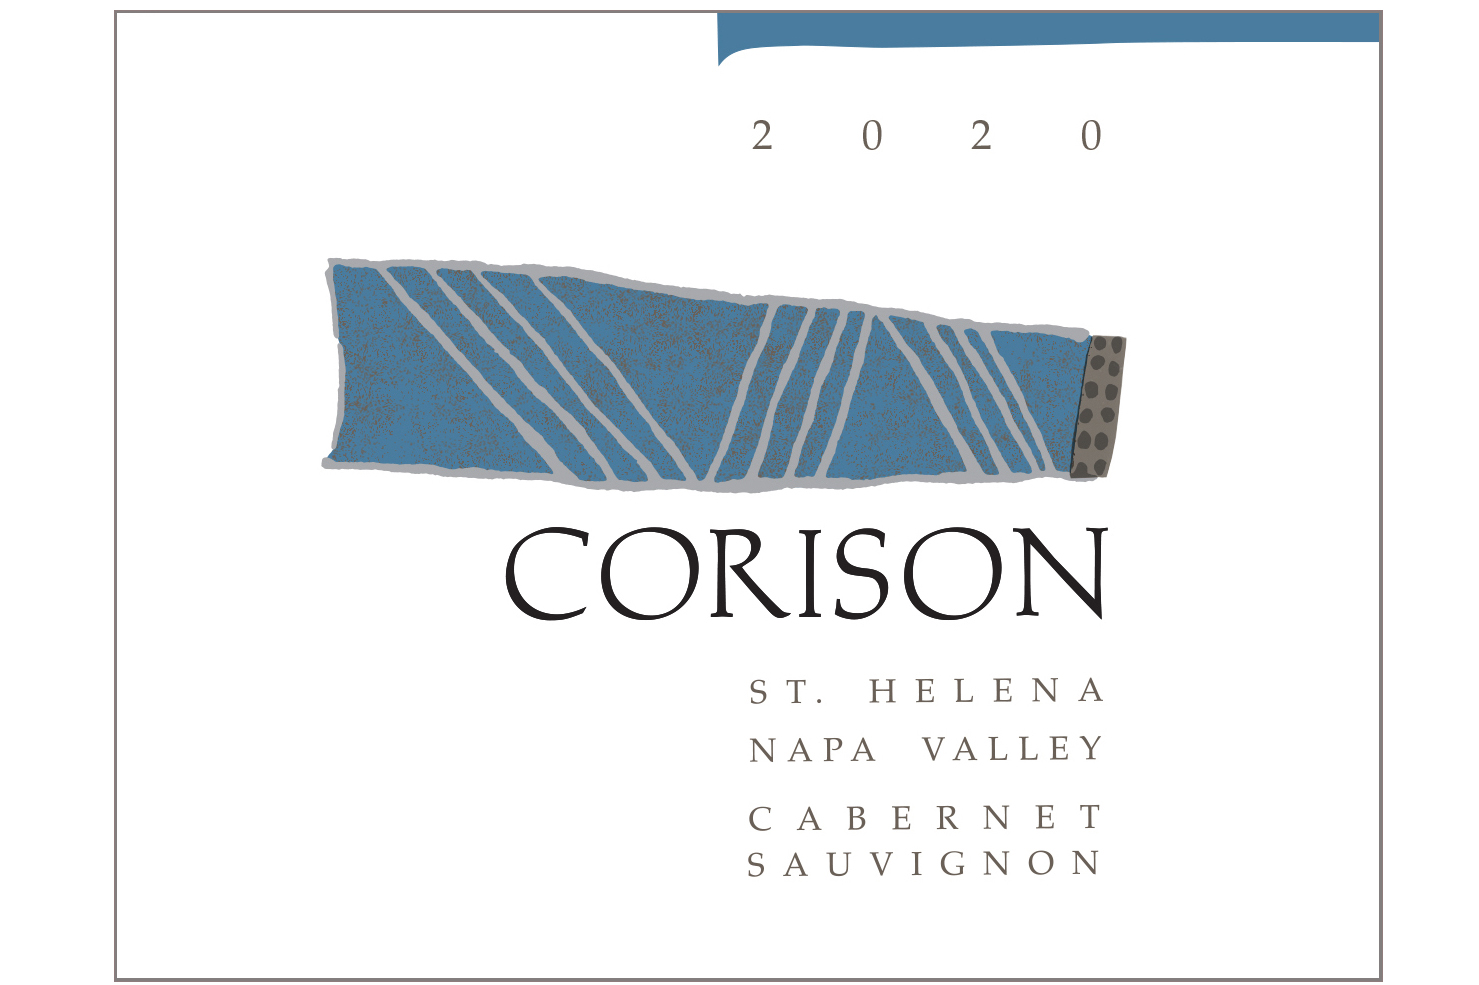 Label of the 2020 Corison St. Helena Napa Valley Cabernet Sauvignon